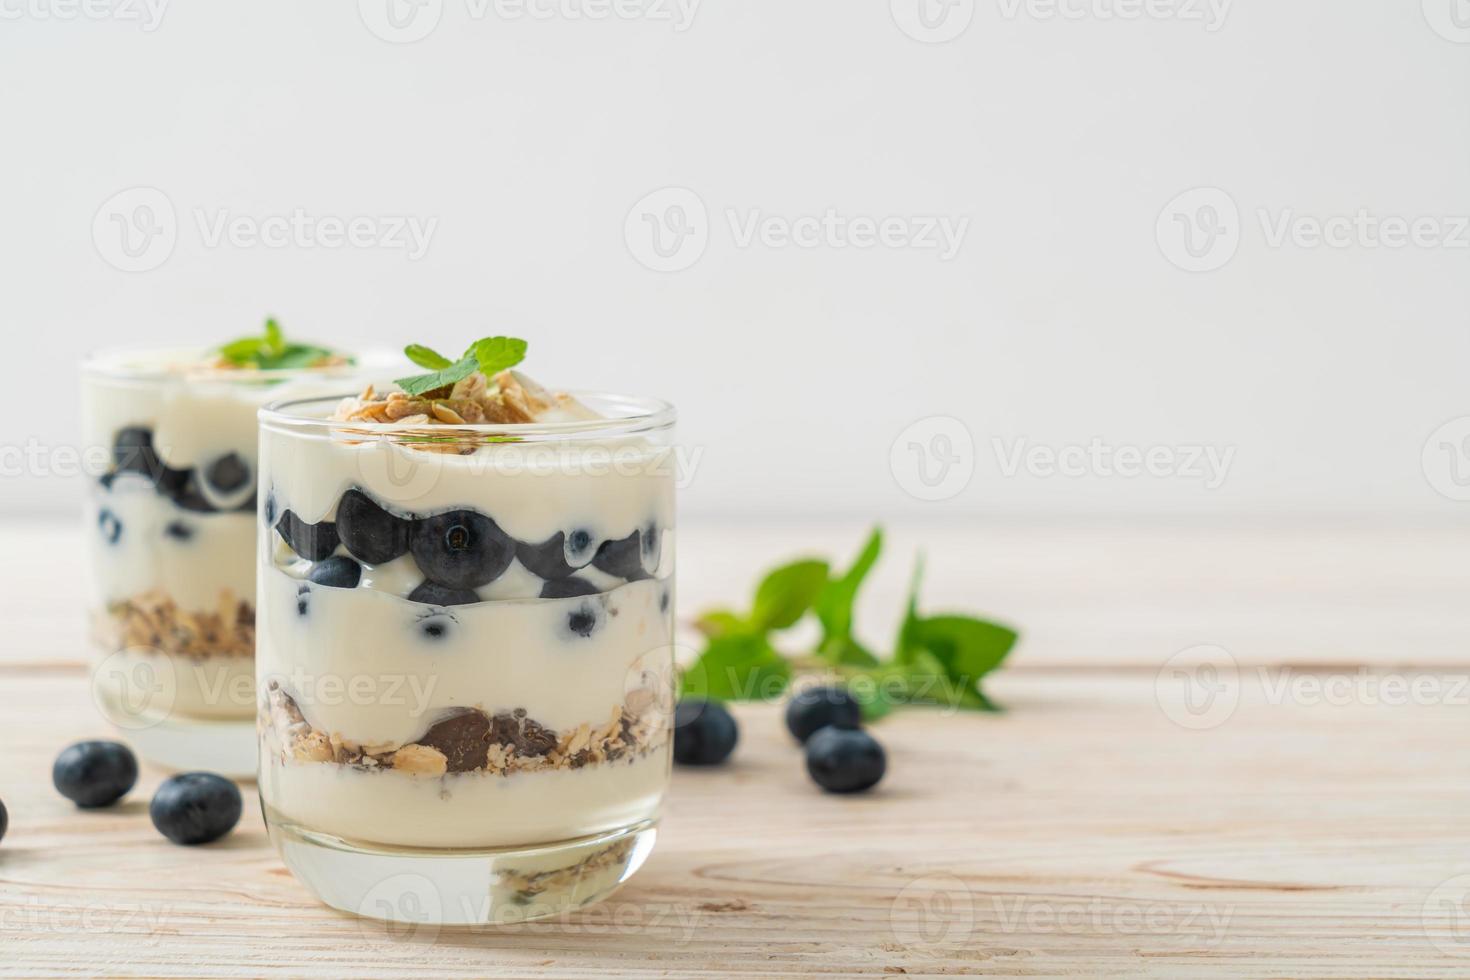 arándanos frescos y yogur con granola - estilo de comida saludable foto